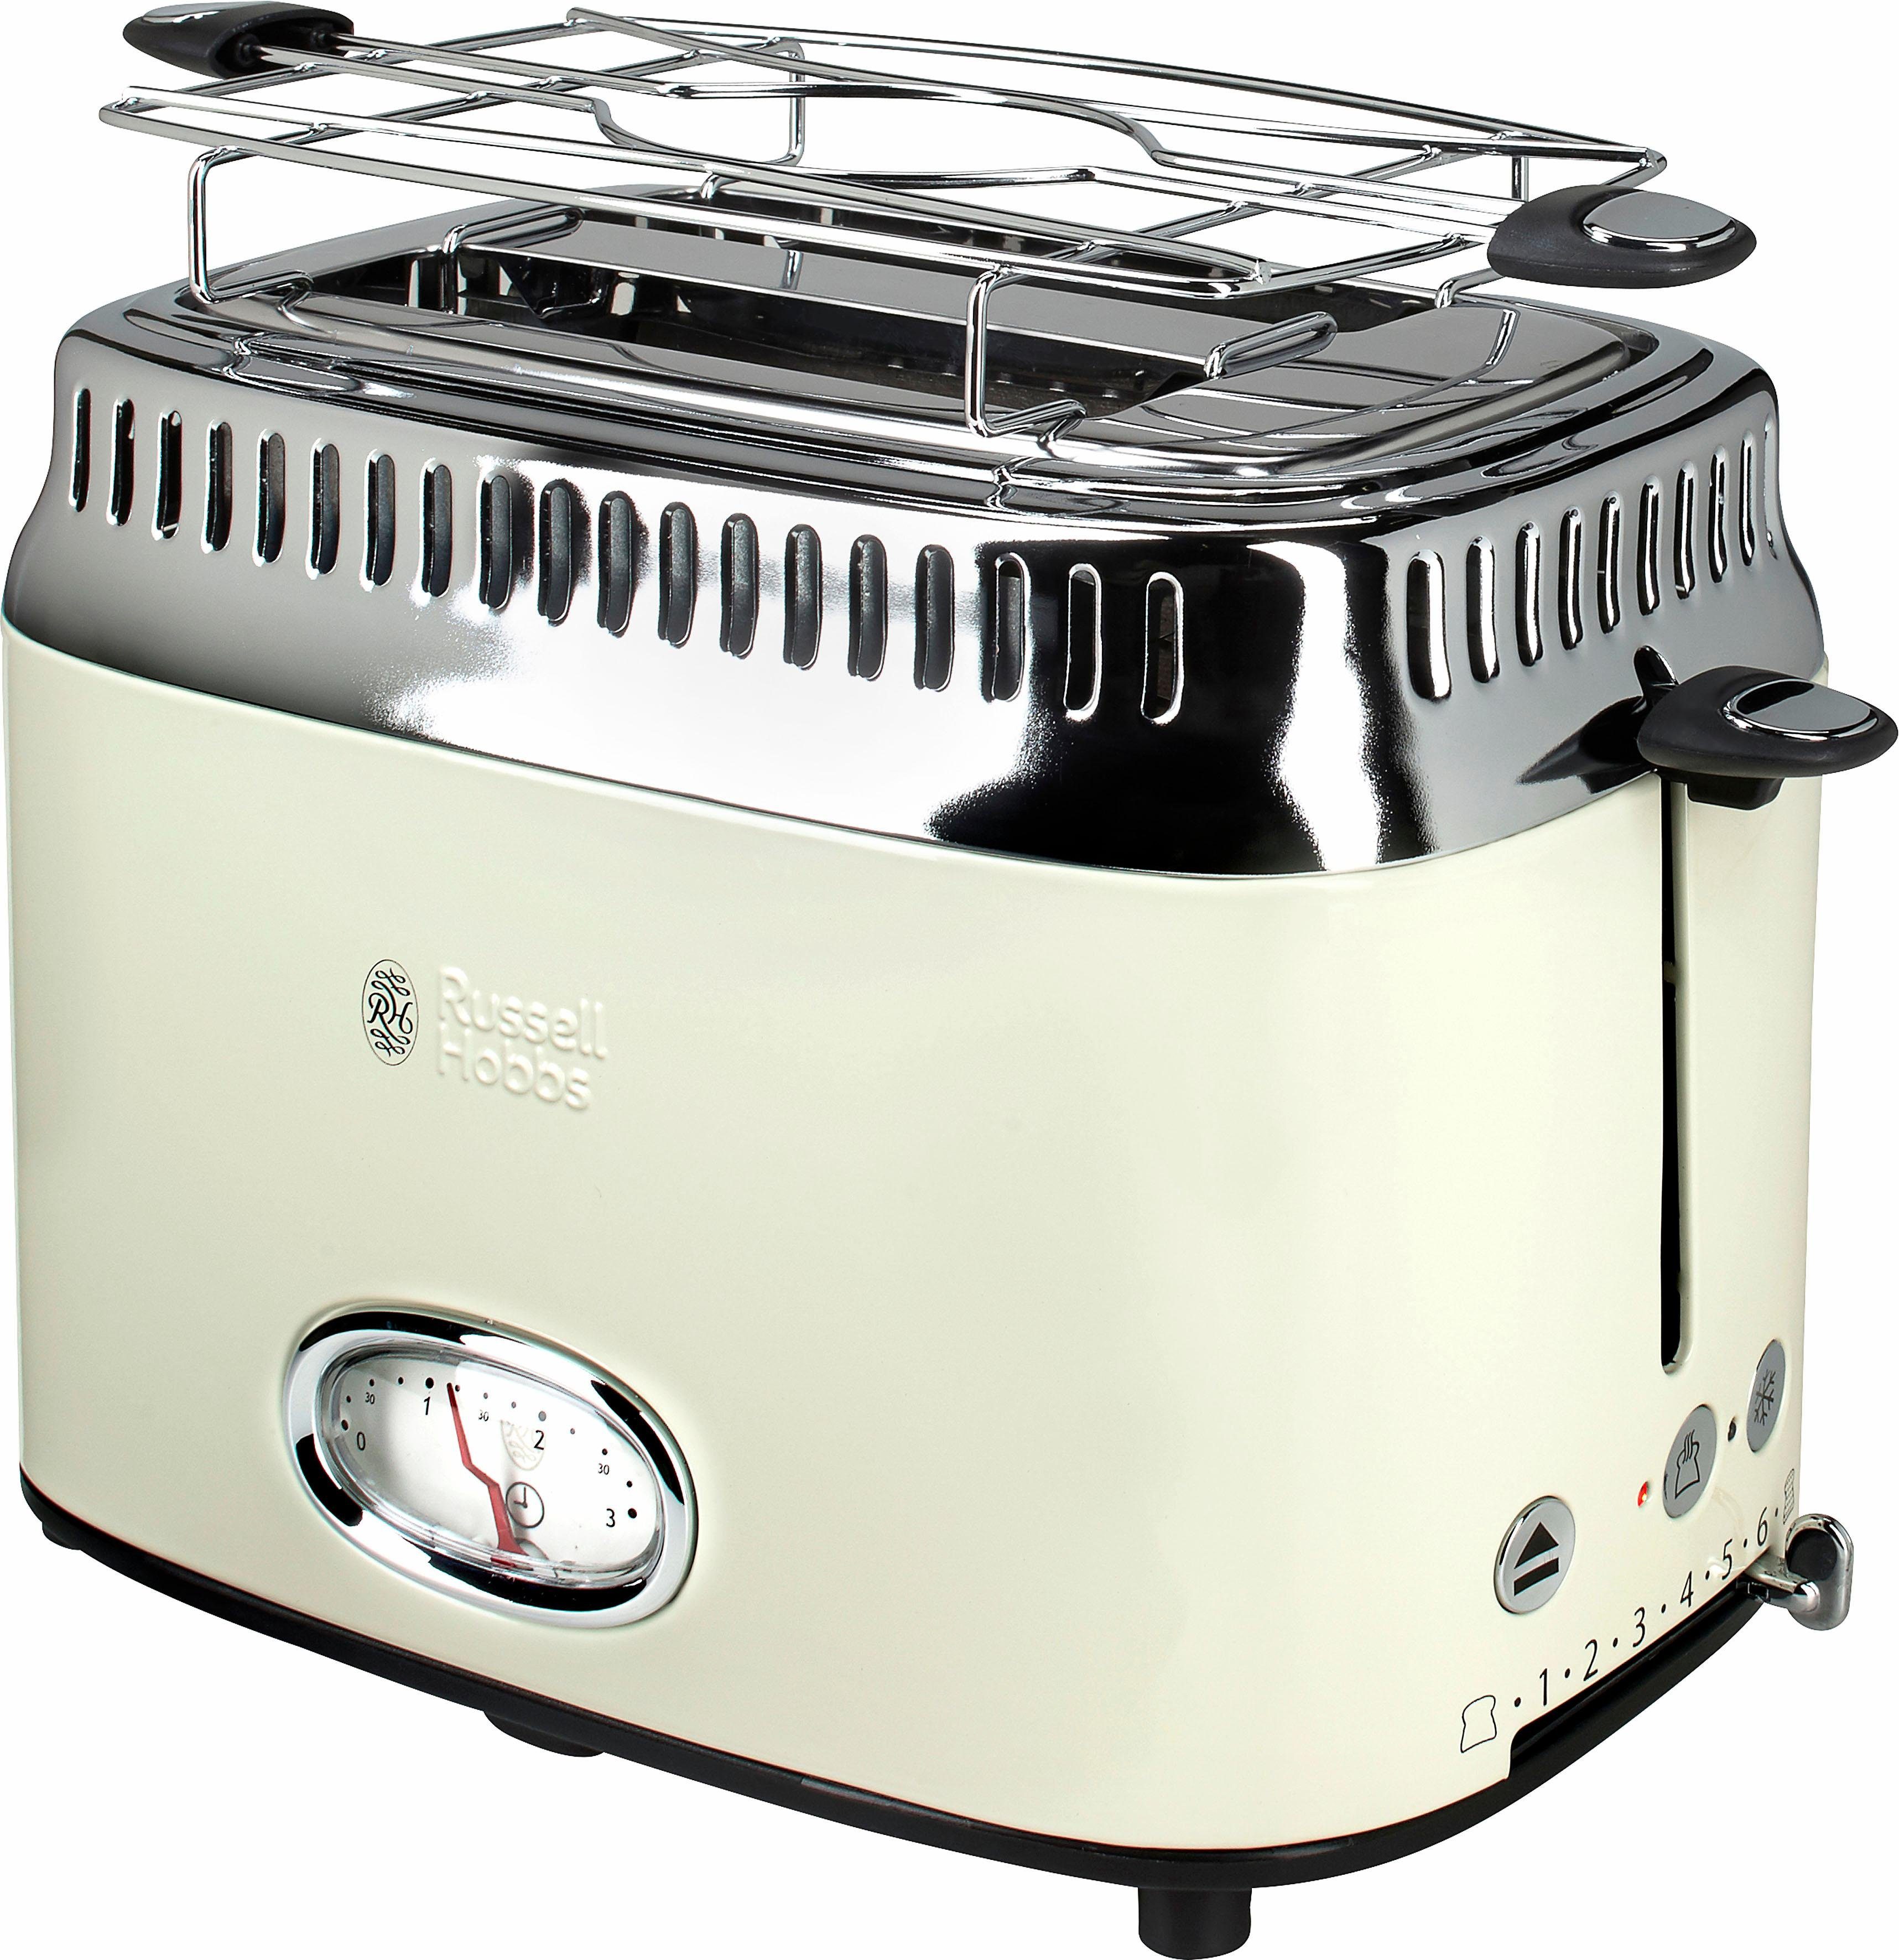 RUSSELL HOBBS Toaster 21682-56, 2 Cream kurze Beige Vintage W, Retro 1300 Schlitze